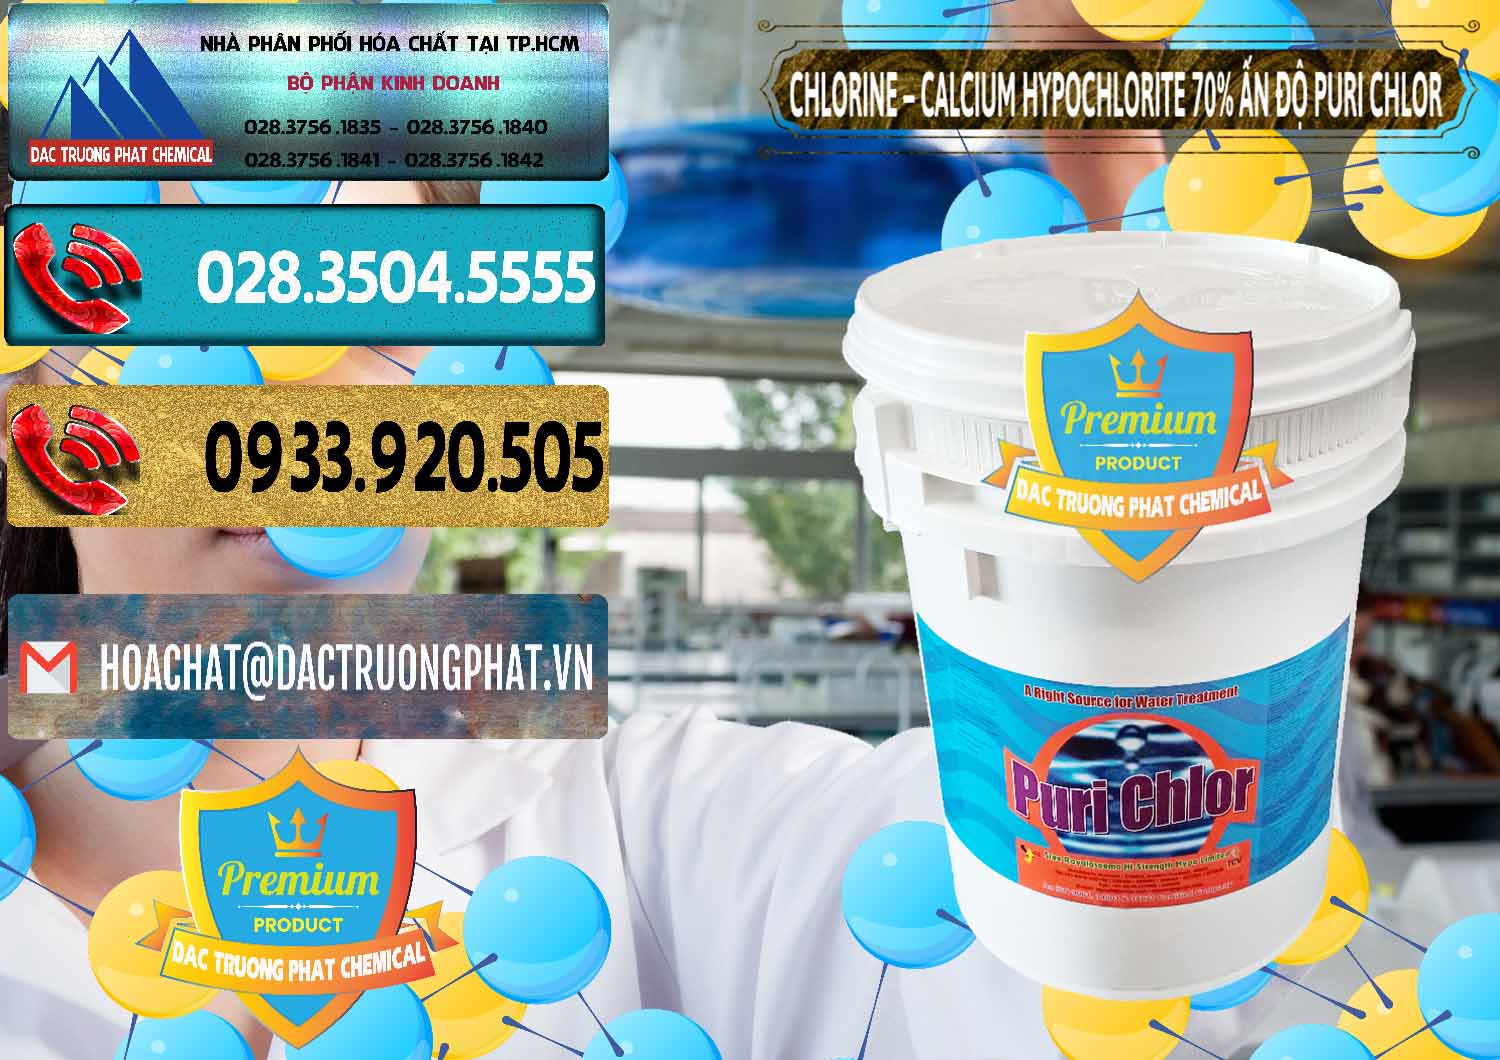 Đơn vị chuyên kinh doanh và bán Chlorine – Clorin 70% Puri Chlo Ấn Độ India - 0123 - Nơi chuyên cung cấp & bán hóa chất tại TP.HCM - hoachatdetnhuom.com